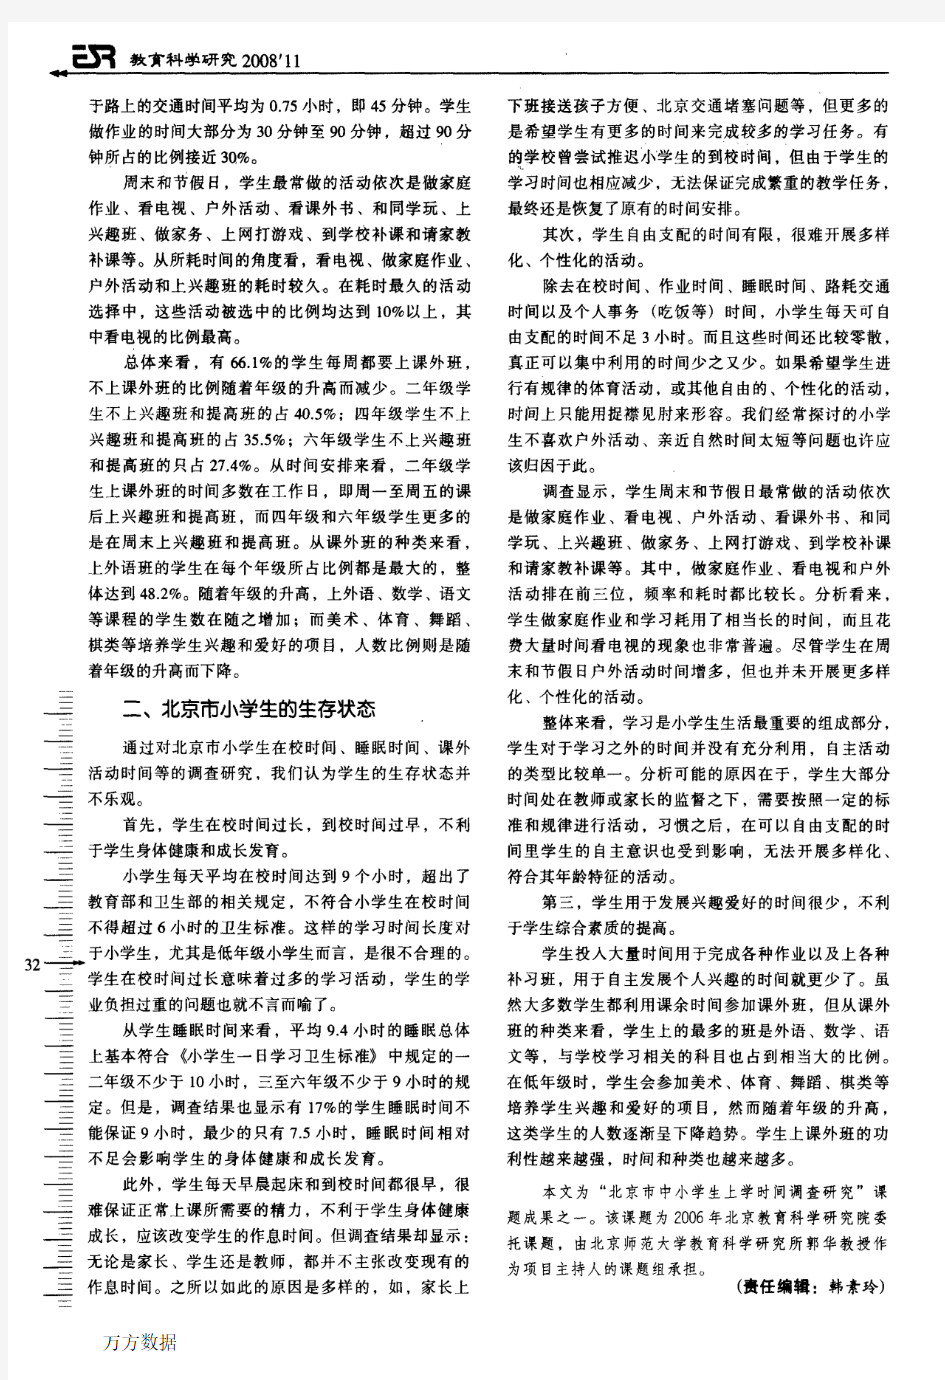 北京市小学生时间安排与生存状态研究